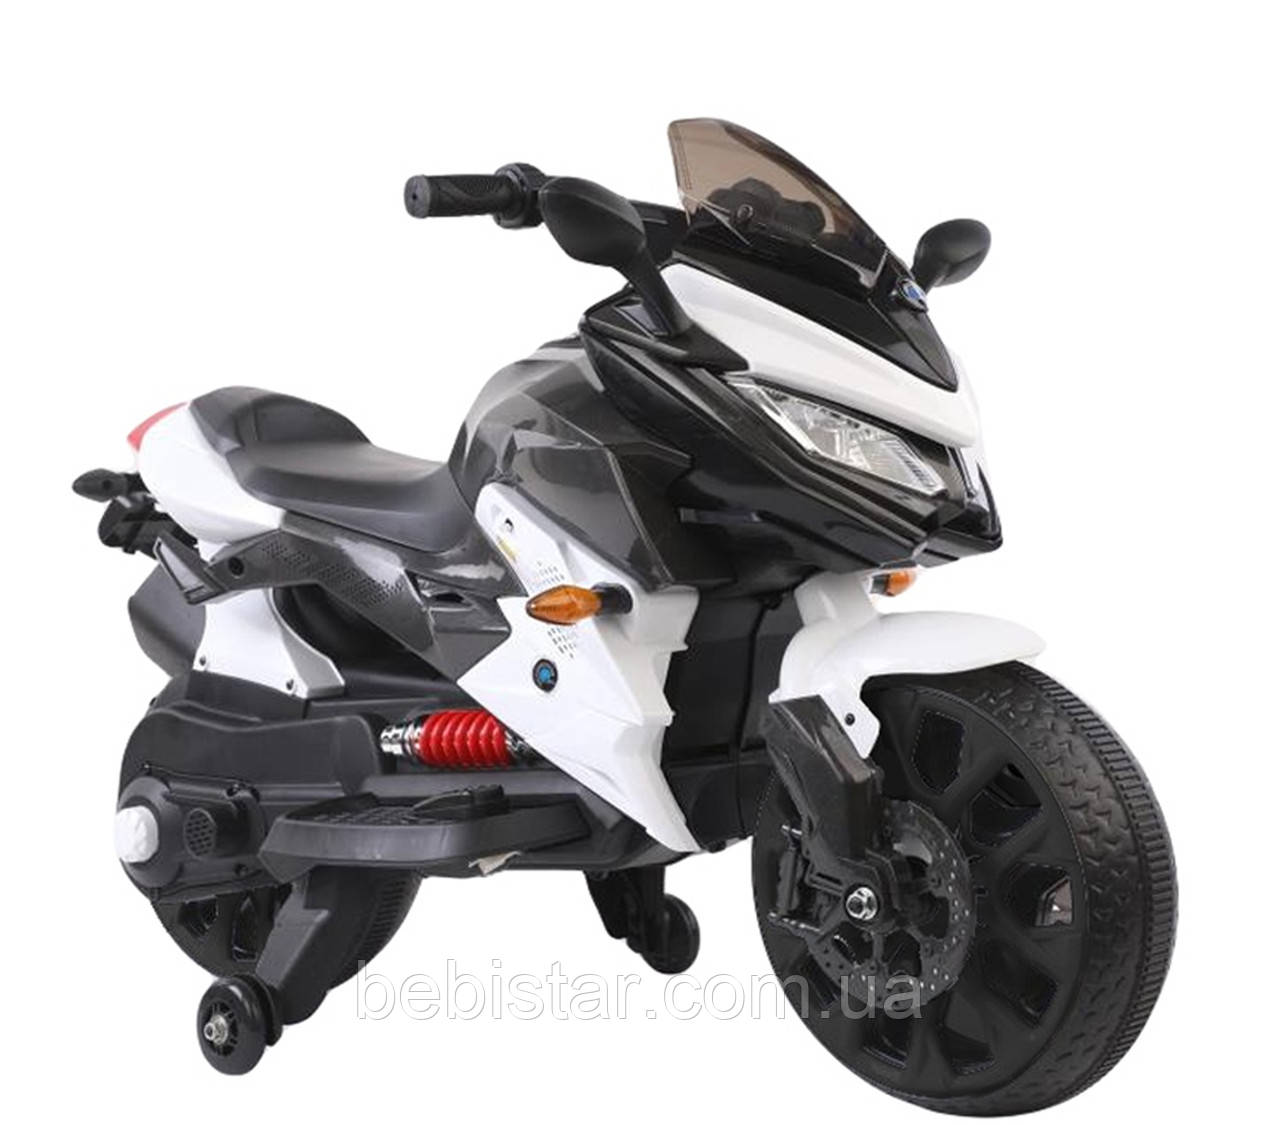 Электромобиль мотоцикл белый с 2-мя моторами EVA колеса MP3 размер д-115см ш-59см в-73см от 3 до 9 лет